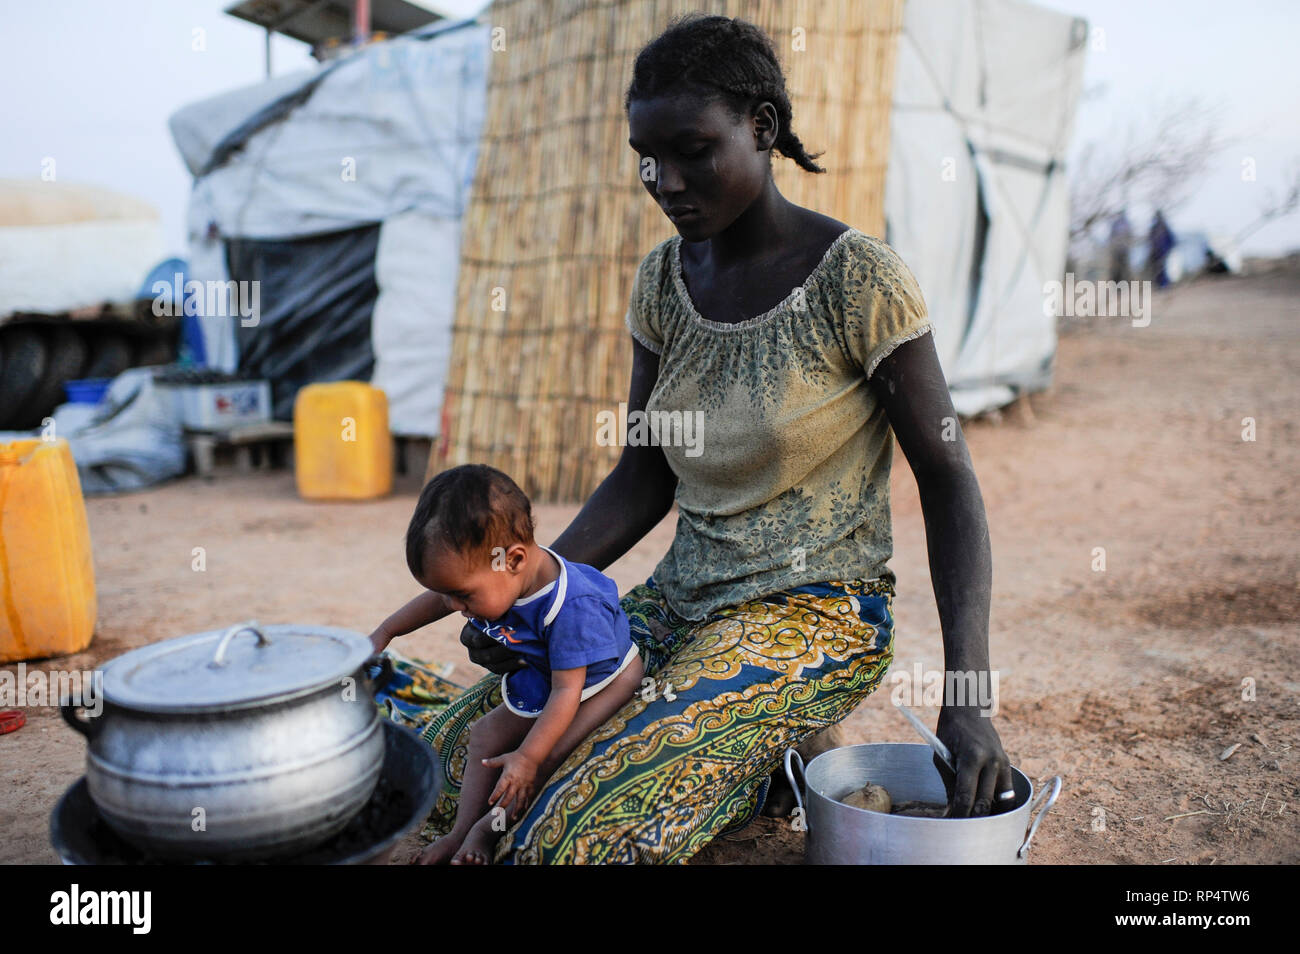 Djibo, BURKINA FASO, la plupart des réfugiés maliens touaregs, camp de réfugiés de Mentao du HCR, ils ont fui en raison de la guerre et de la terreur islamiste dans le nord du Mali, l'Afrique noire et de ménage gardienne de famille touareg poêle de cuisson Banque D'Images